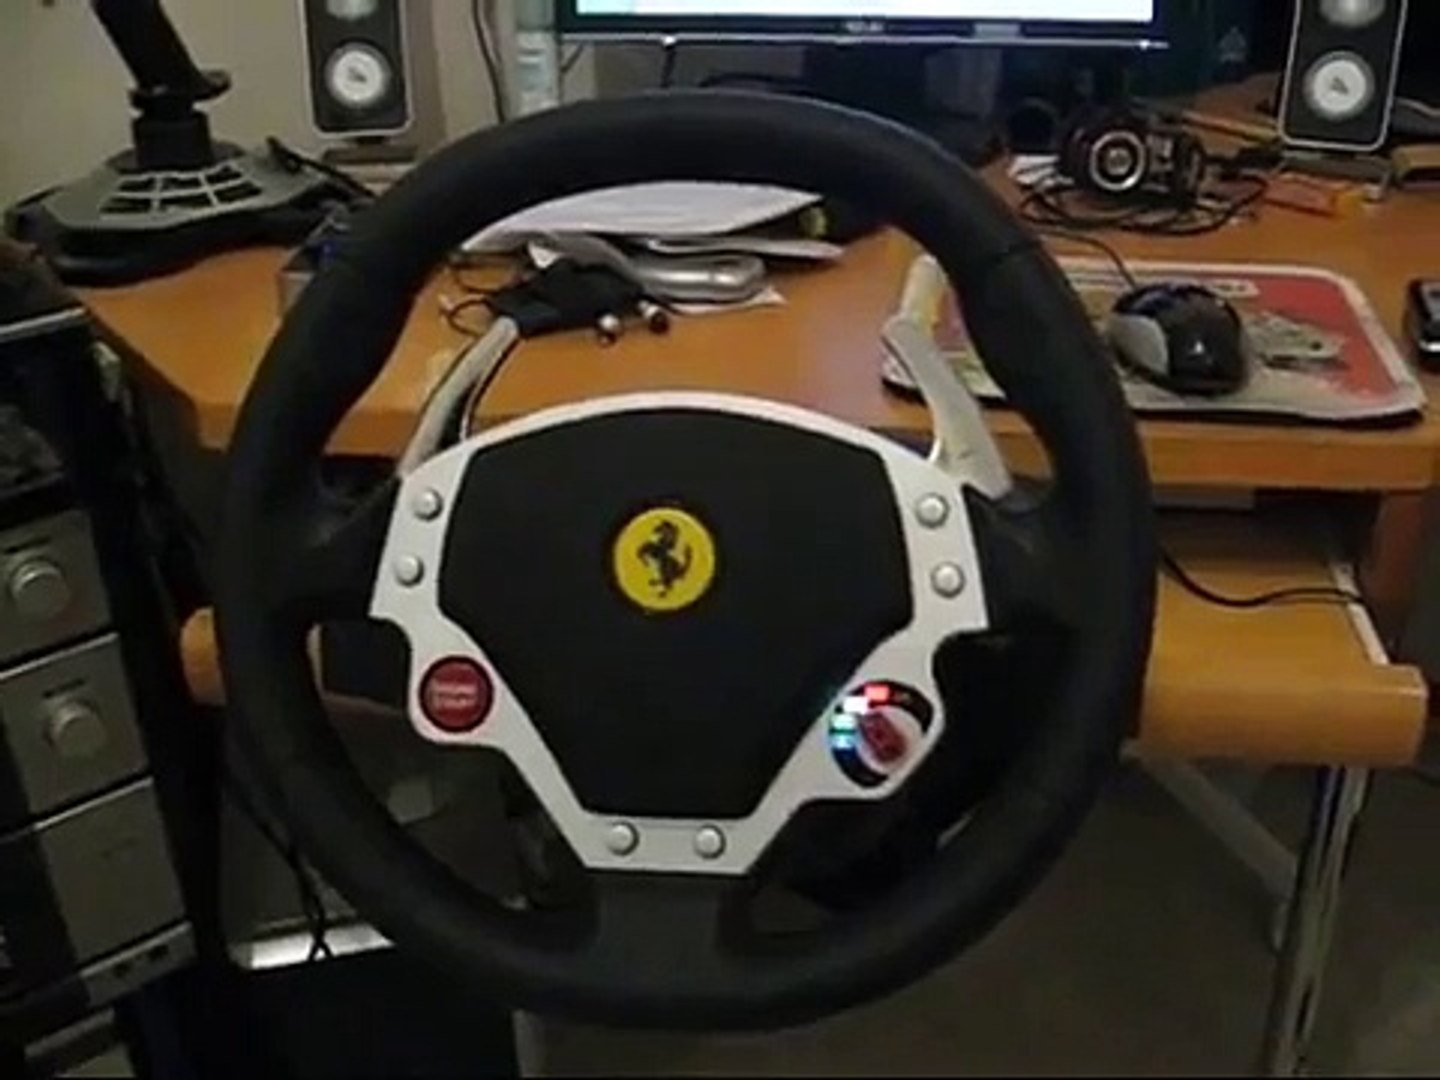 Thrustmaster Ferrari F430 Force Feedback Racing Wheel